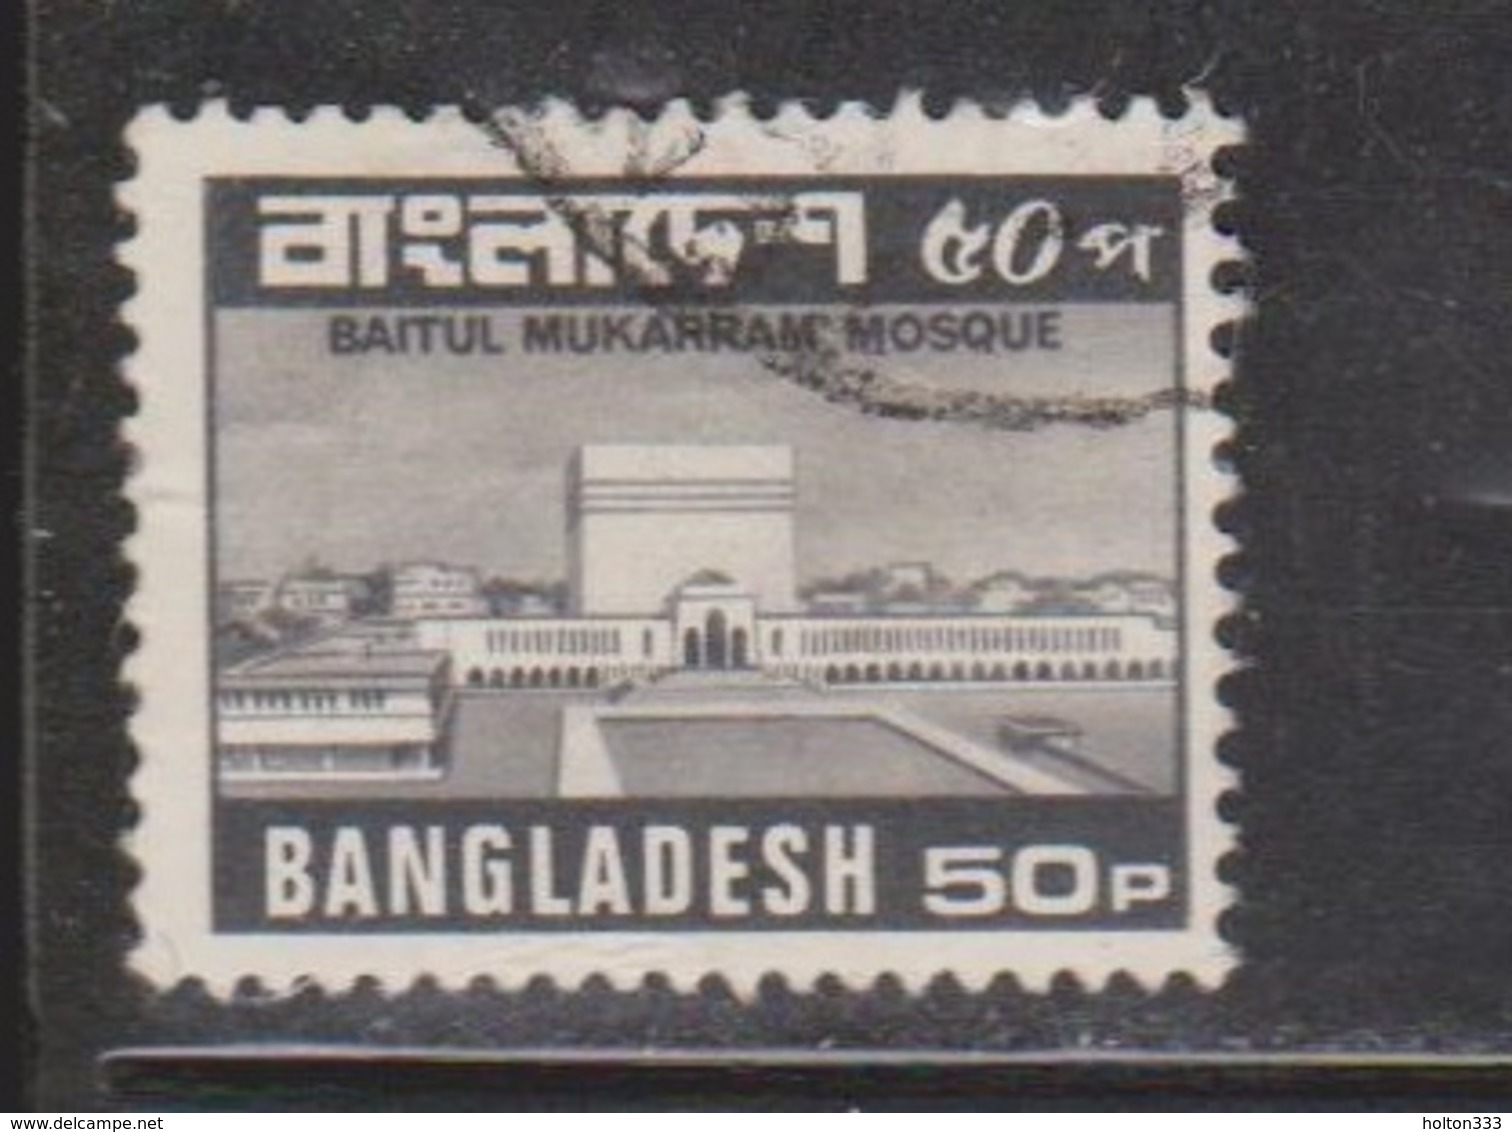 BANGLADESH Scott # 172 Used - Baitul Mukarrum Mosque - Bangladesh